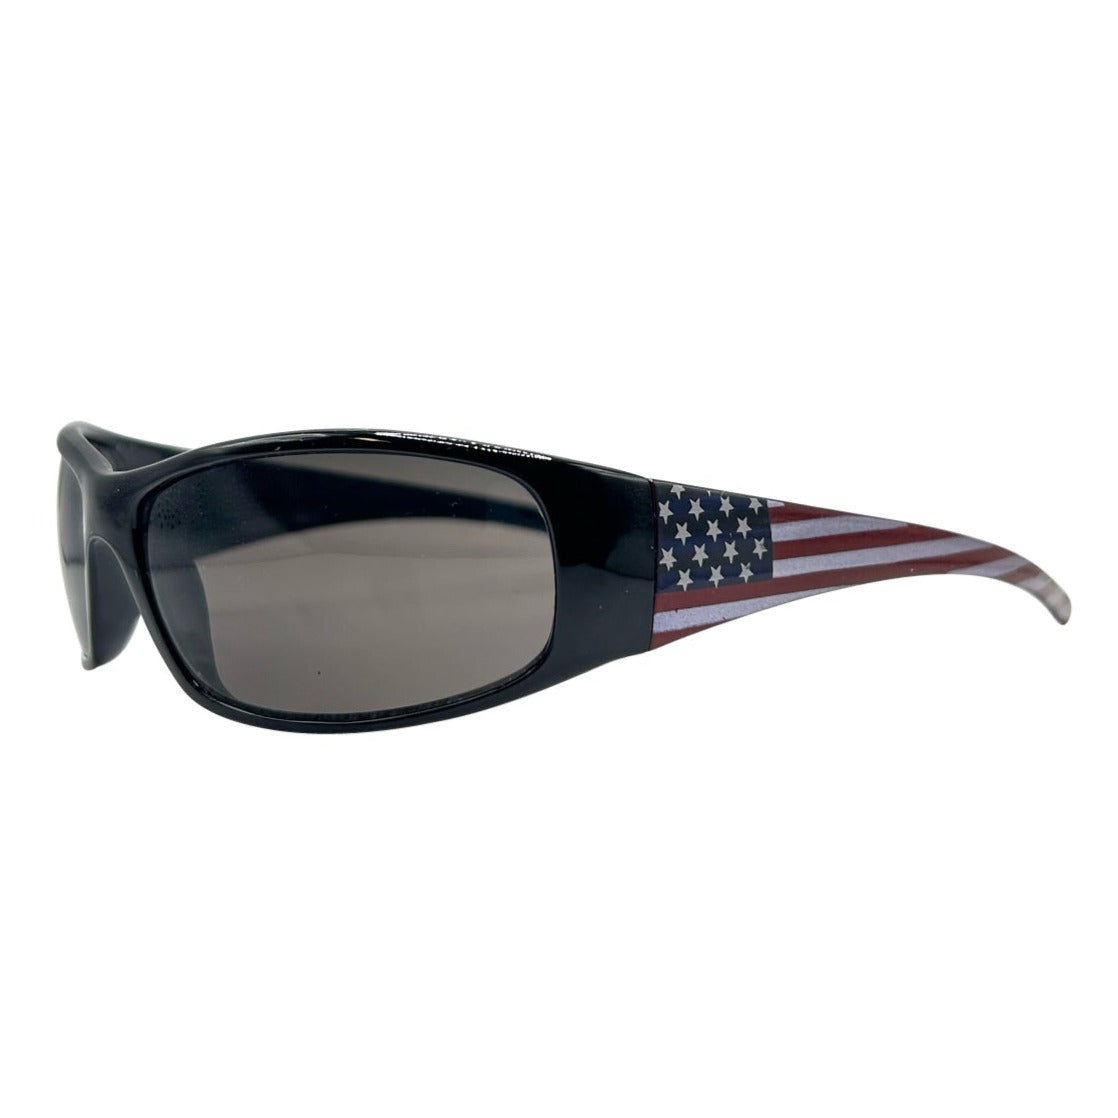 U.S SLAY Sunglasses